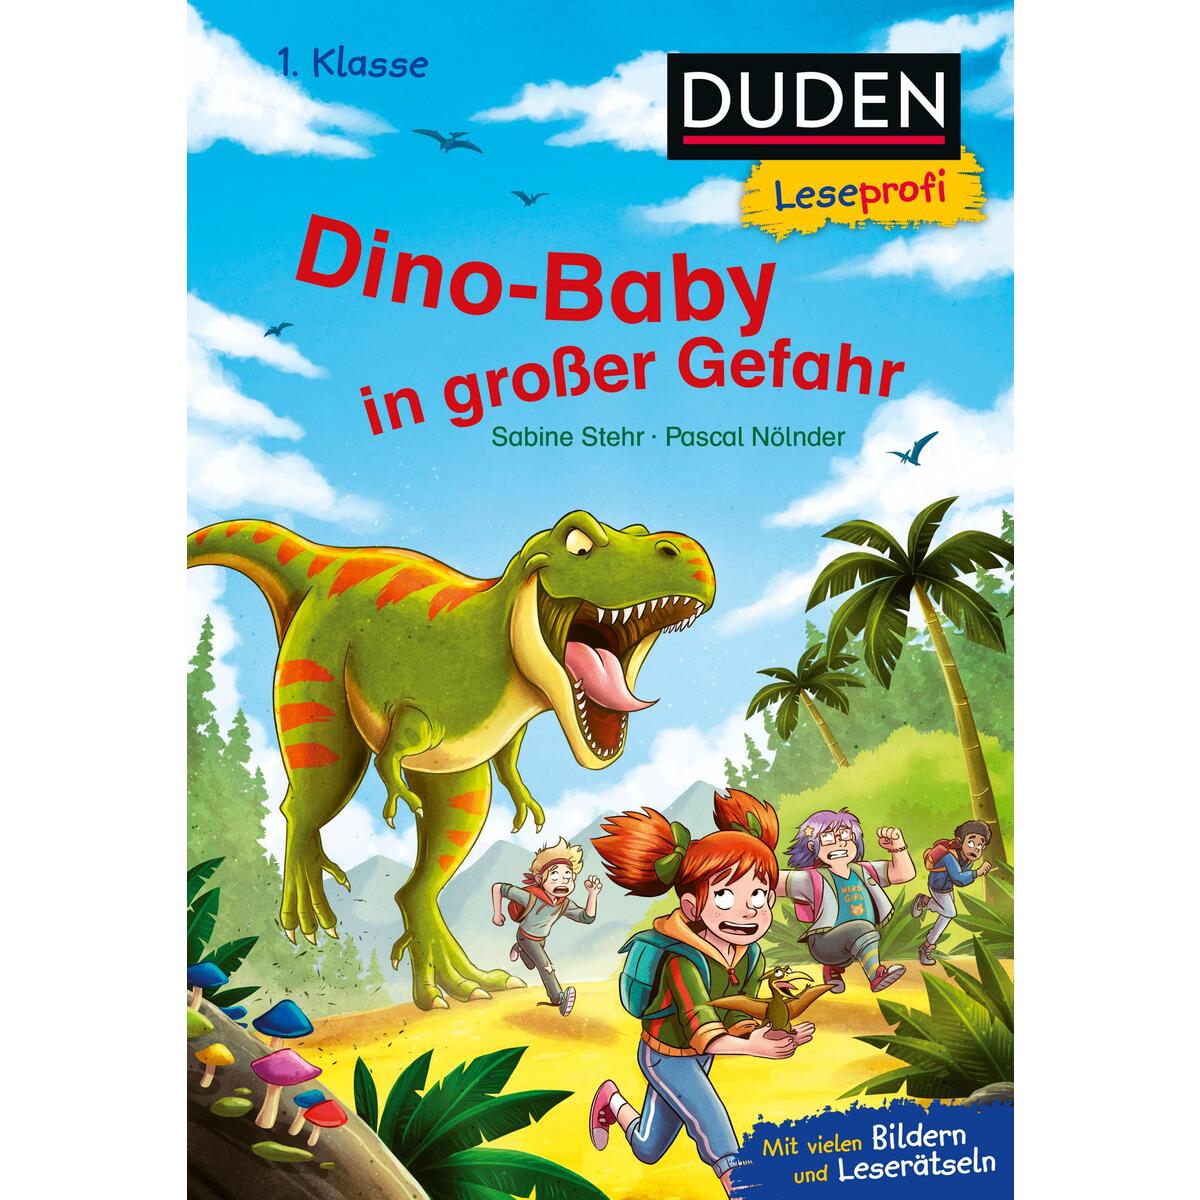 Duden Leseprofi - Dino-Baby in großer Gefahr, 1. Klasse von FISCHER Sauerländer Duden